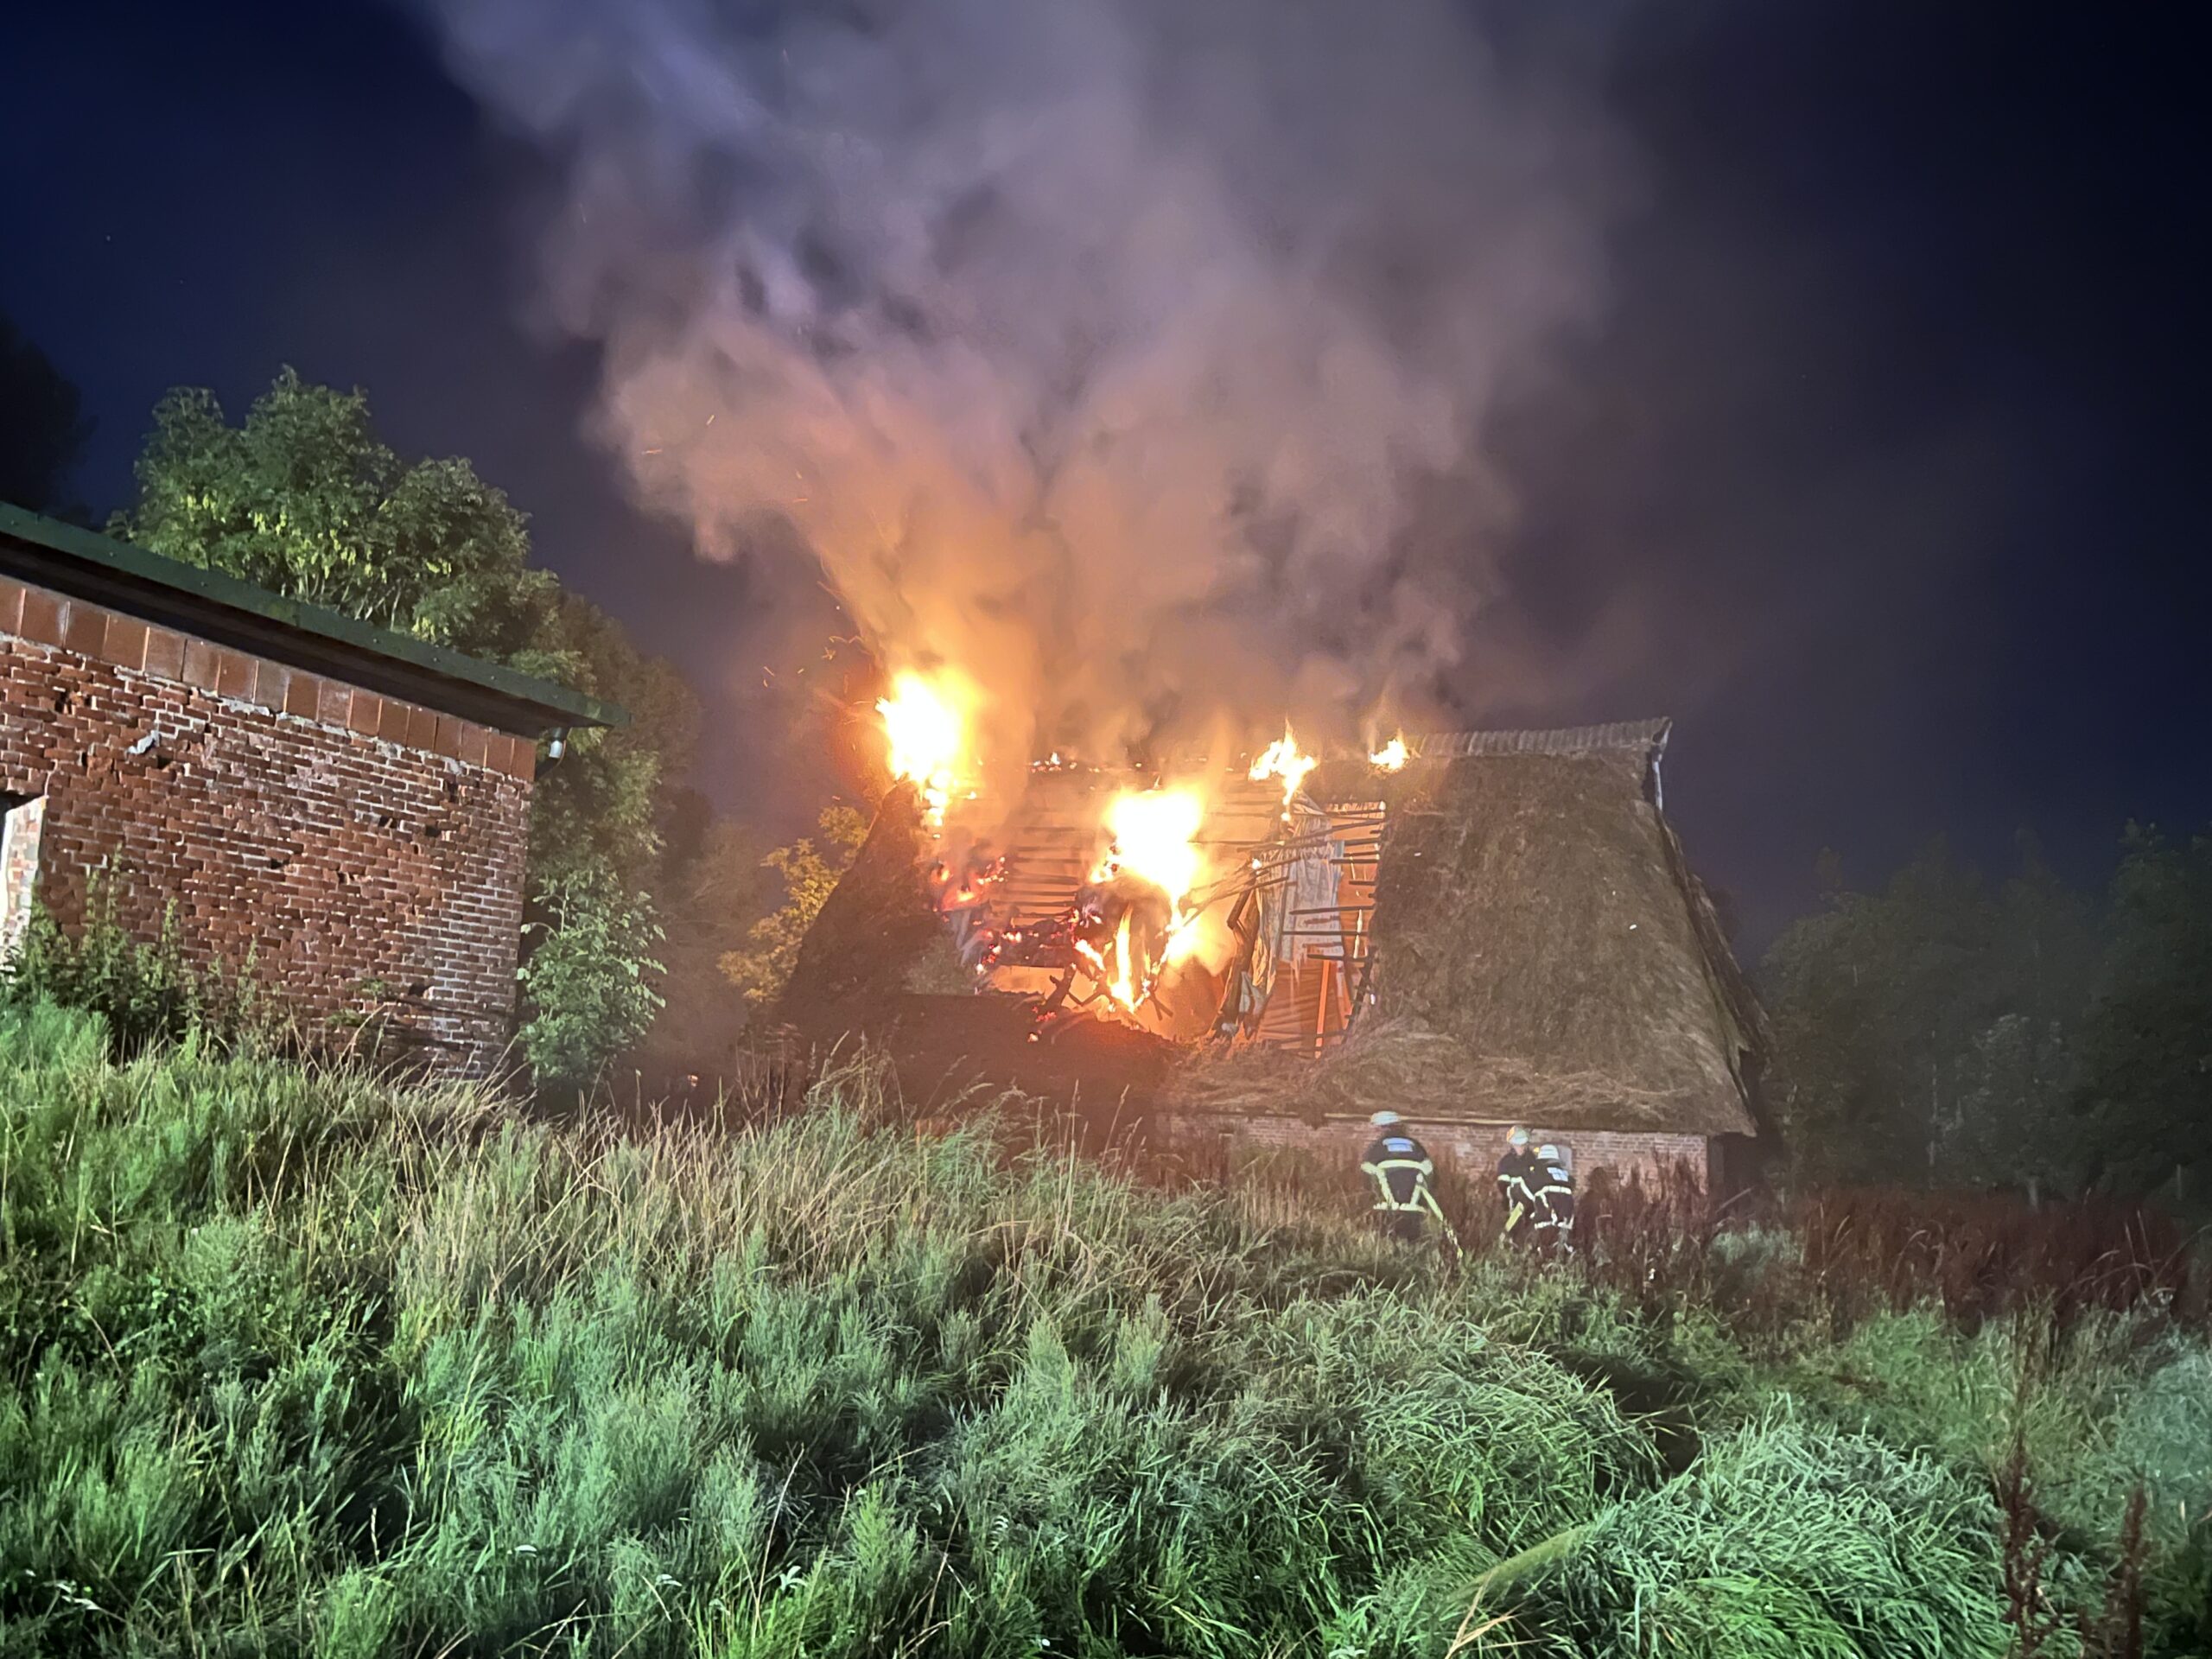 Scheune in Flammen – Großalarm für die Feuerwehr im Norden